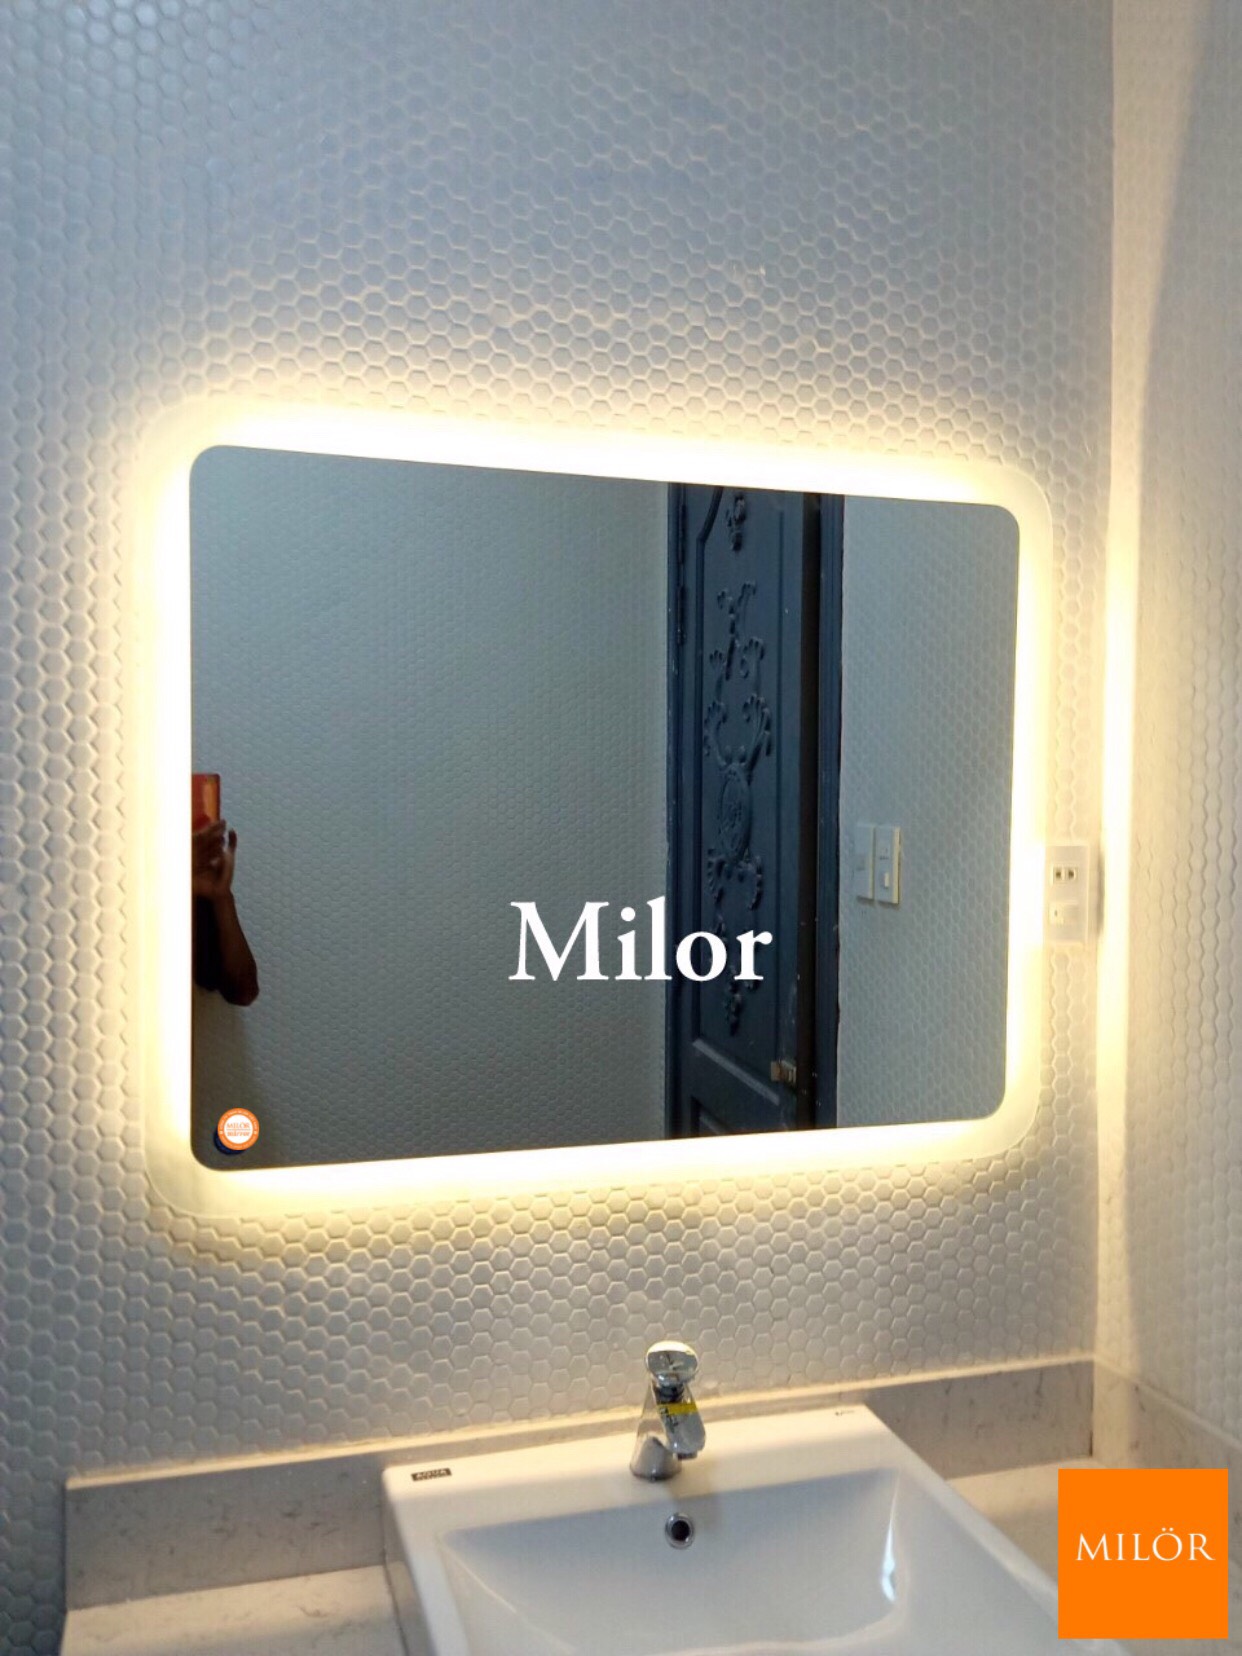 Gương Milor nhà tắm với thiết kế chữ nhật độc đáo cùng với đèn led tươi sáng, làm cho việc tắm rửa trở nên ấn tượng và đáng nhớ. Các hình ảnh thể hiện gương nhà tắm đèn led chữ nhật Milor có thể thuyết phục bạn sử dụng sản phẩm này cho phòng tắm của mình. Nó sẽ giúp làm mới phòng tắm của bạn, làm cho nó trở thành một căn phòng tắm tiên tiến và đầy phong cách.